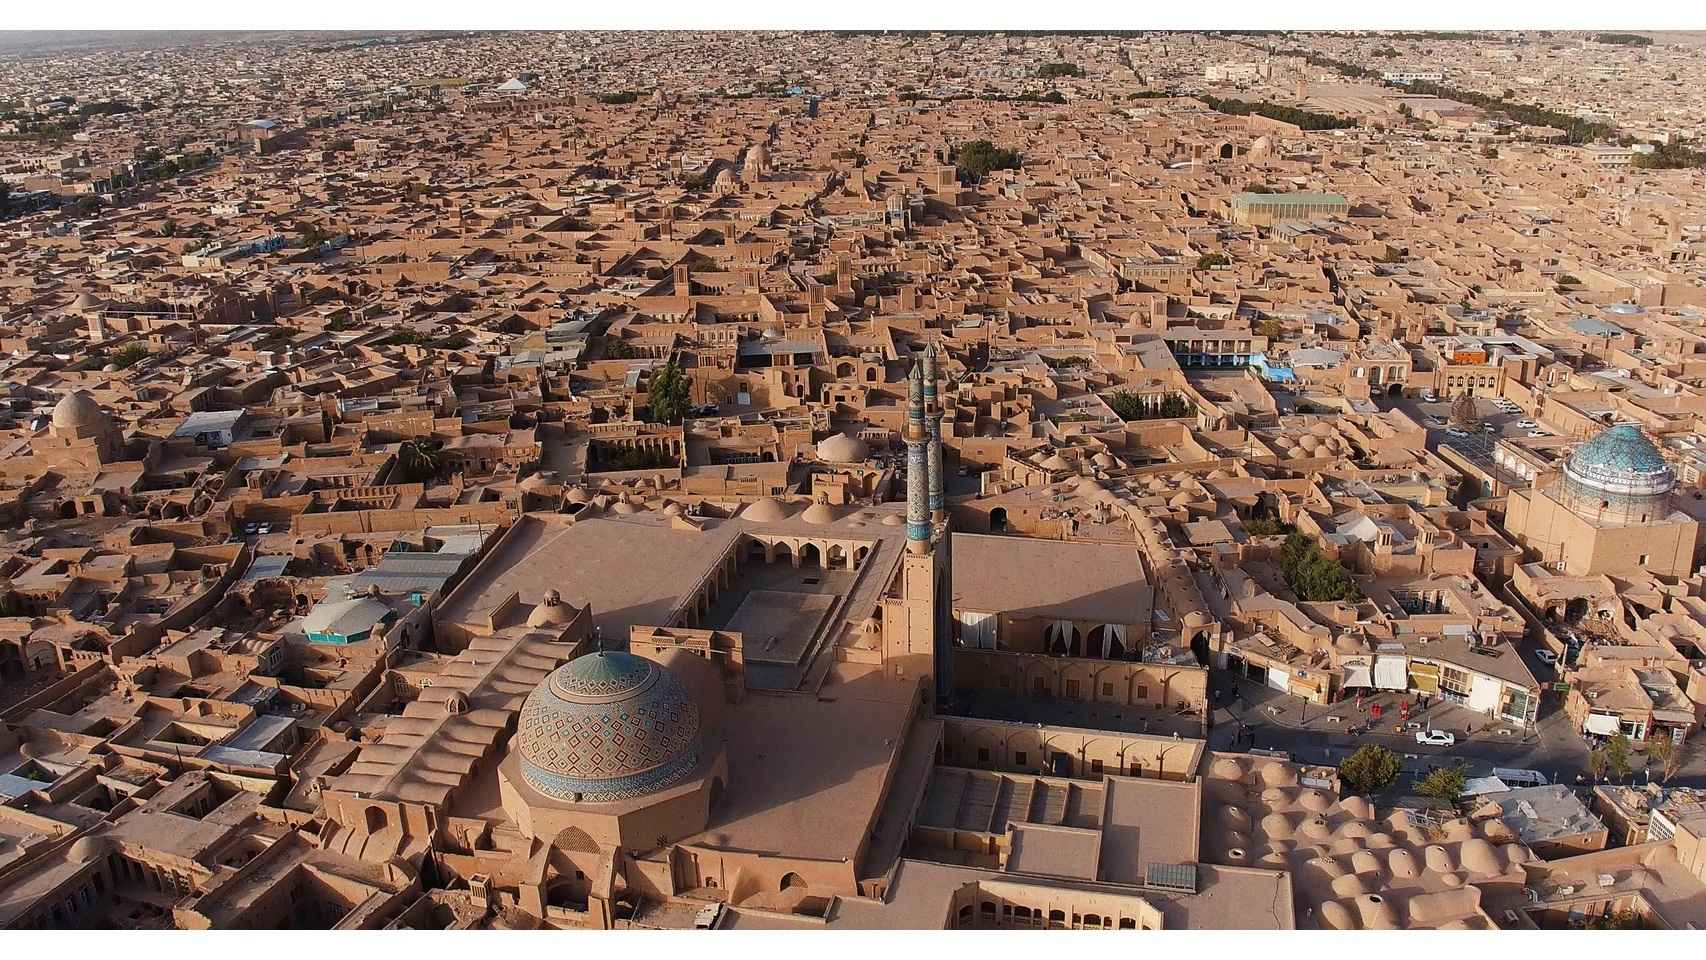 Ciudad histórica de Yazd en Irán. Se le conoce como la ciudad de tierra en medio del desierto.